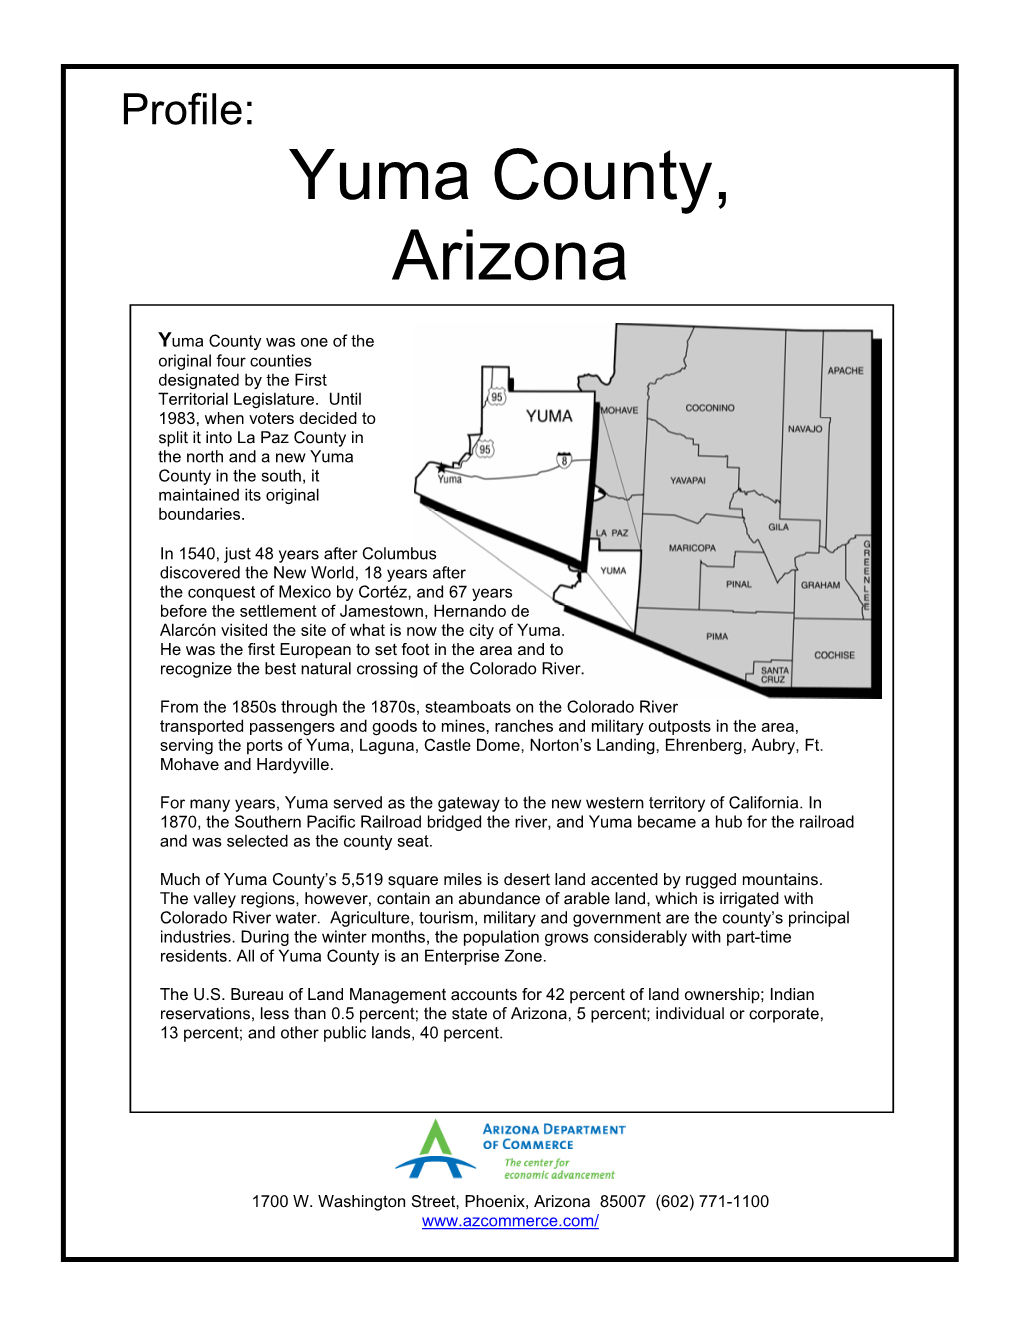 Yuma County, Arizona